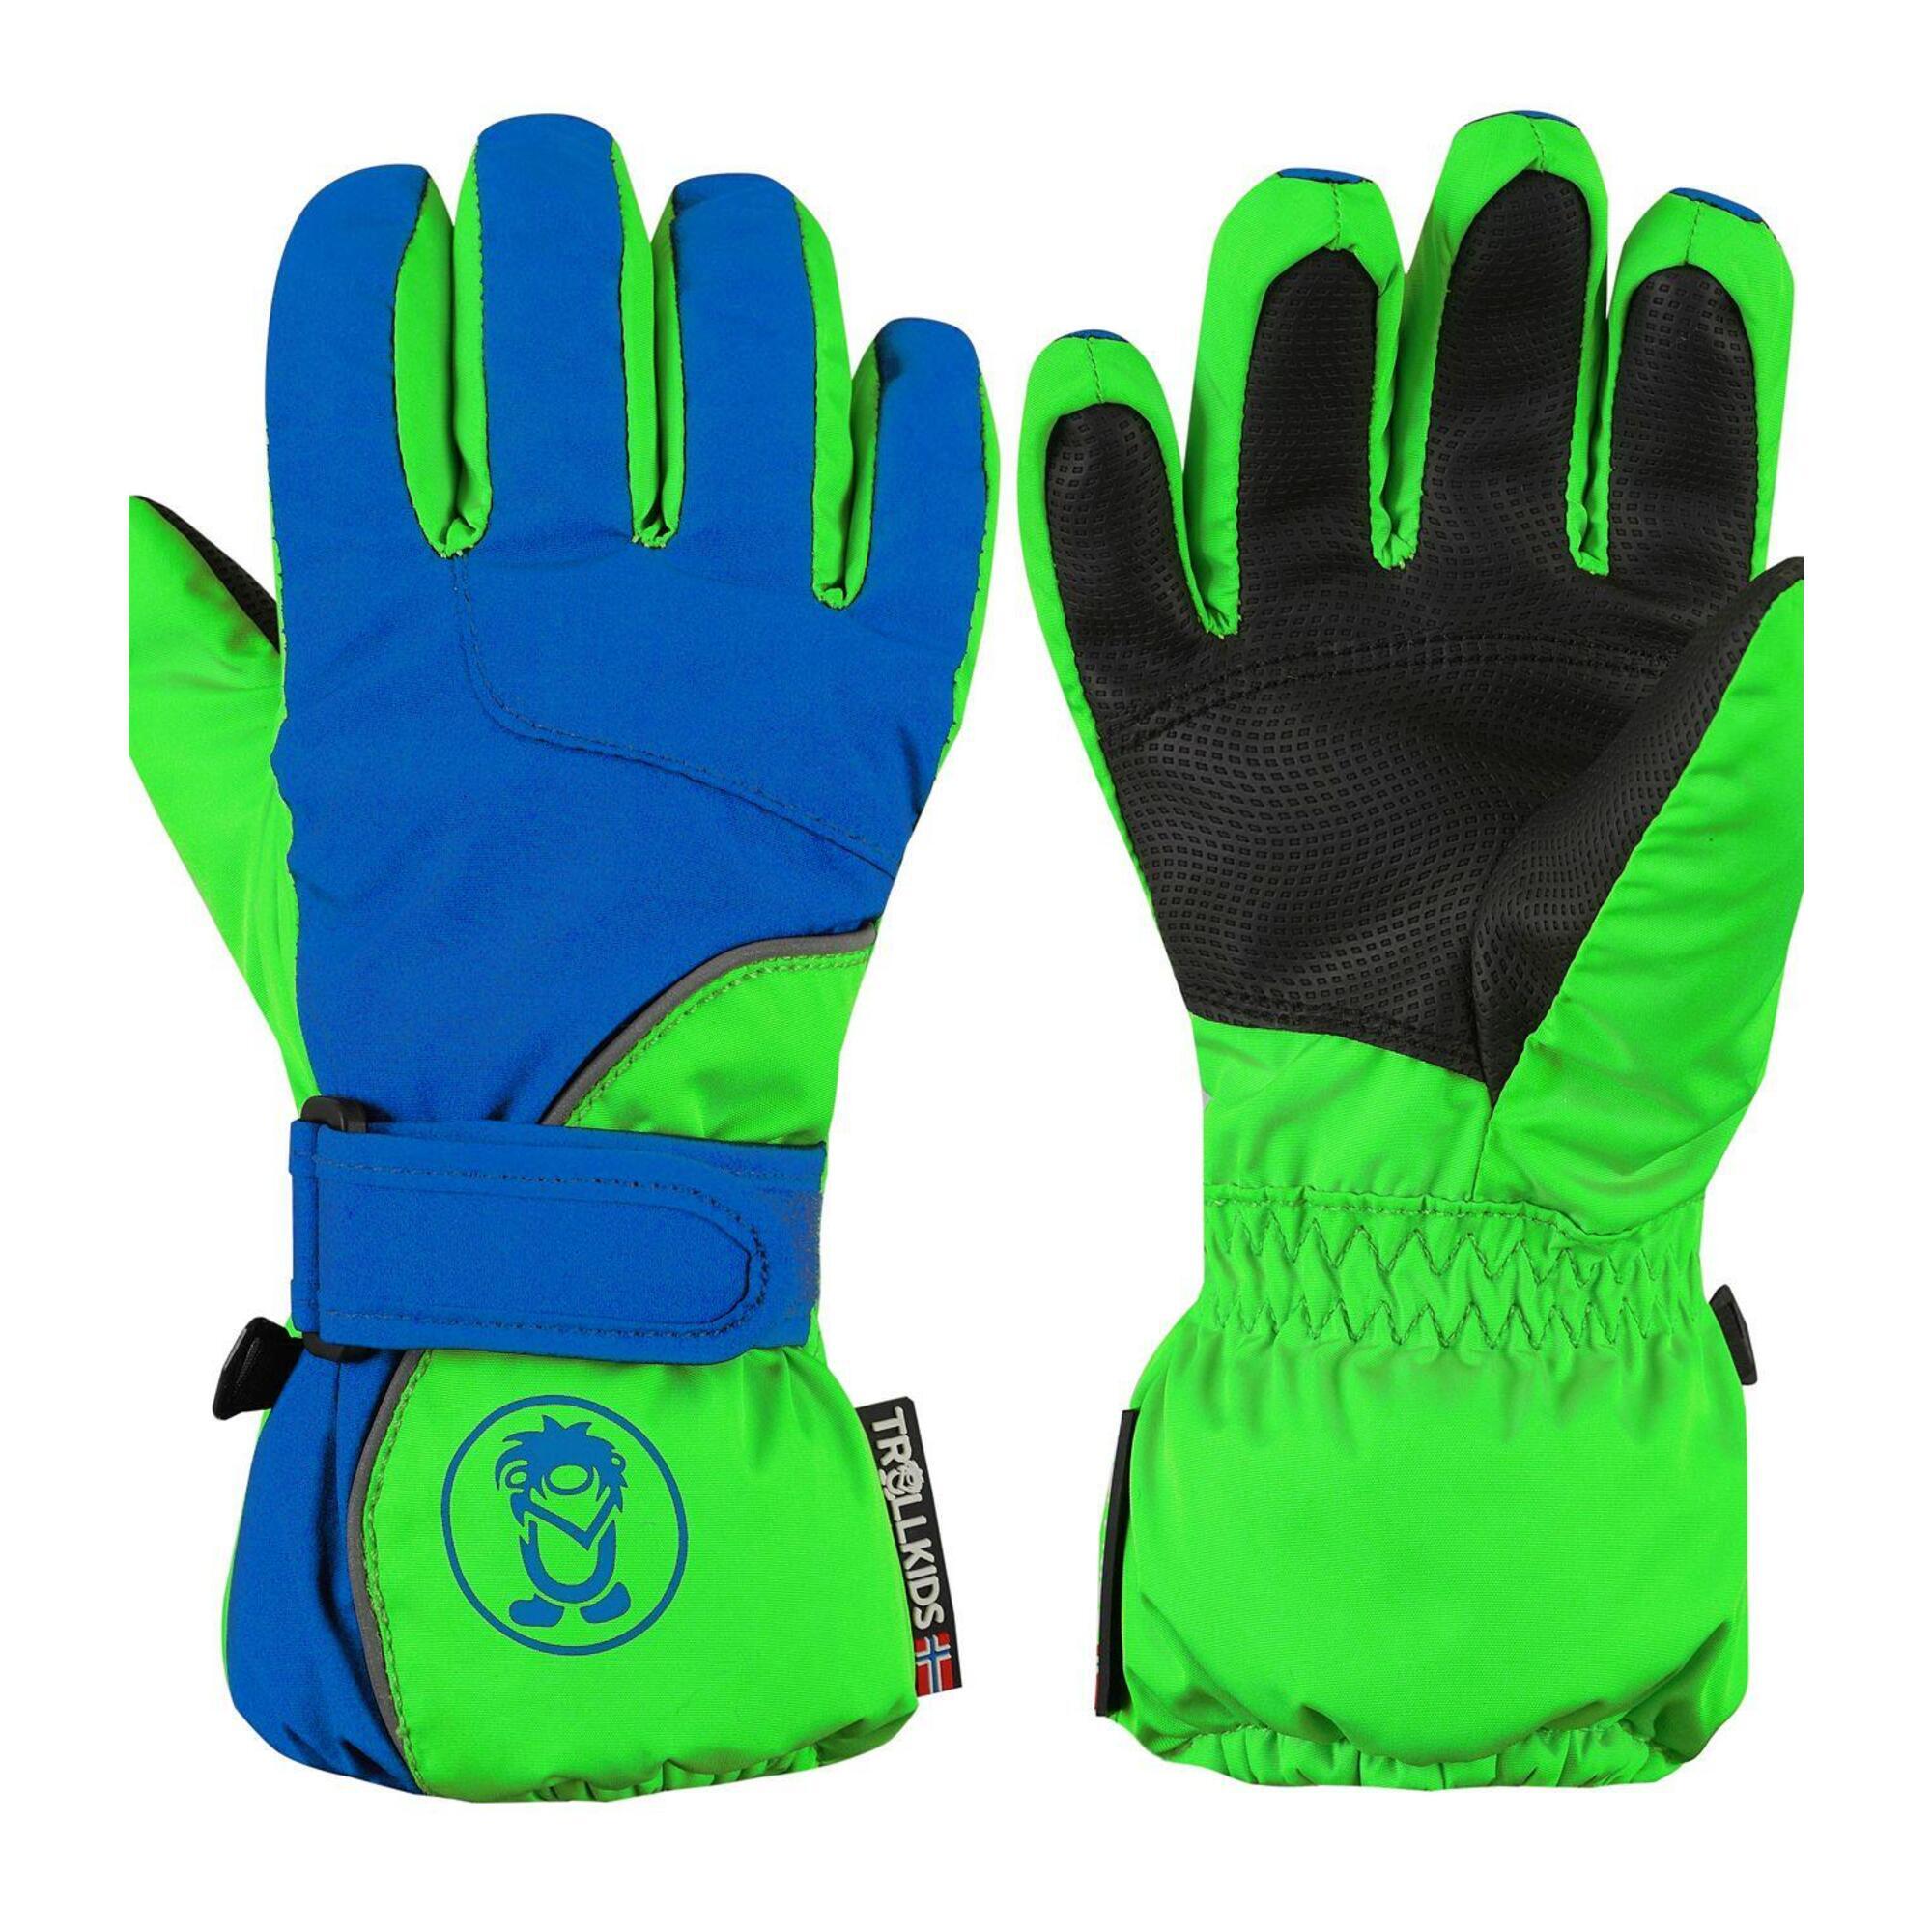 Перчатки Trollkids Troll, синий / зеленый перчатки размер m синий зеленый